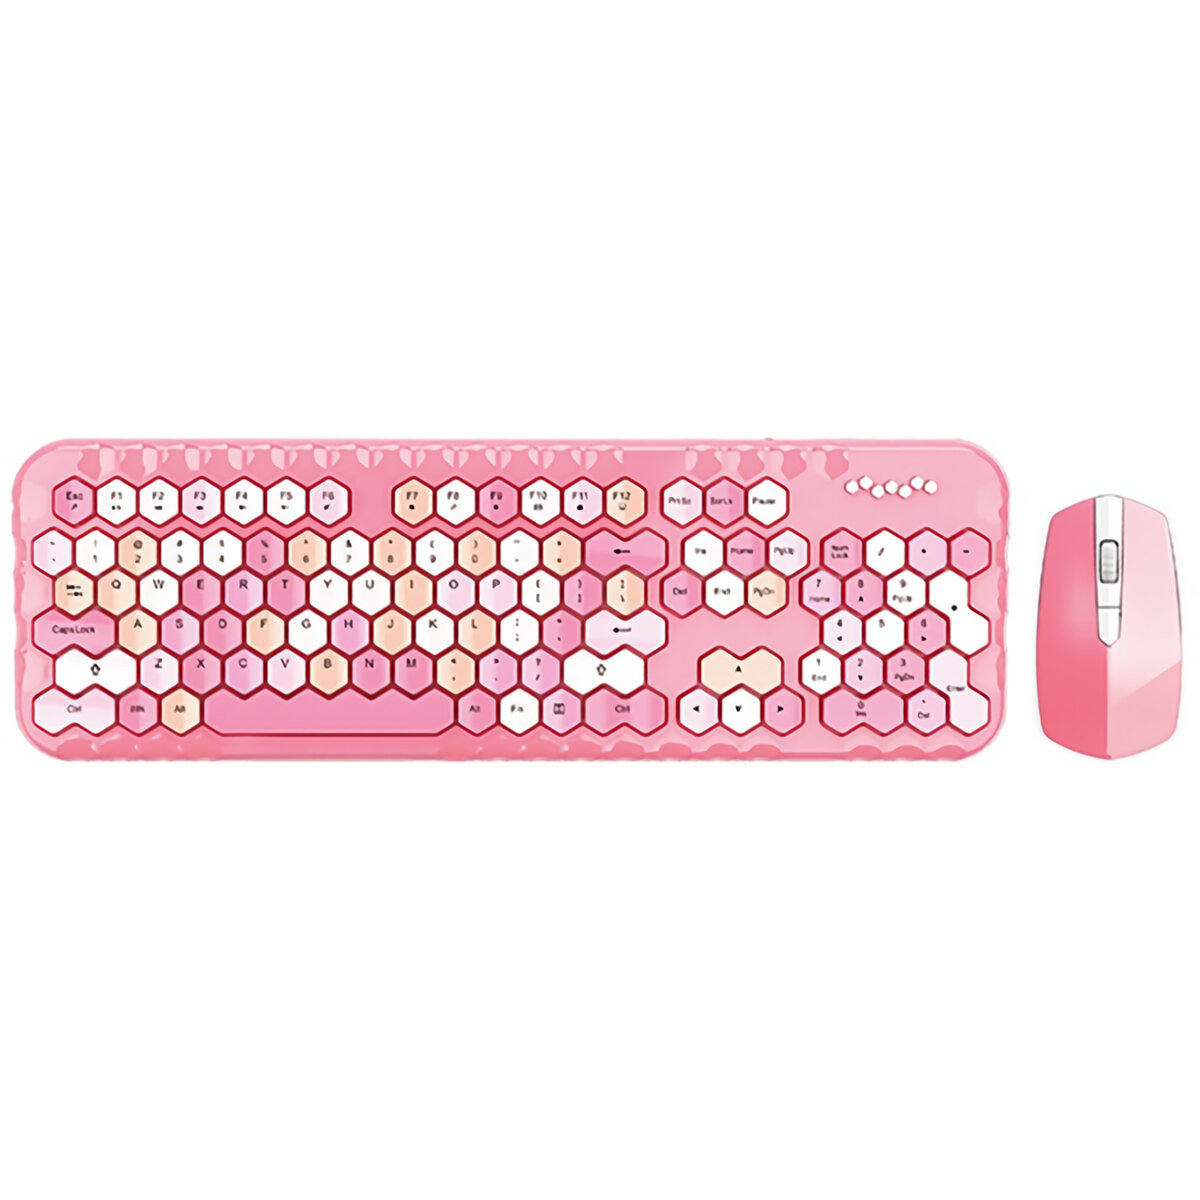 Mofii Honey Plus 2.4G Wireless Tastatur- und Mausset 104 Tasten Honeycomb Keycaps...